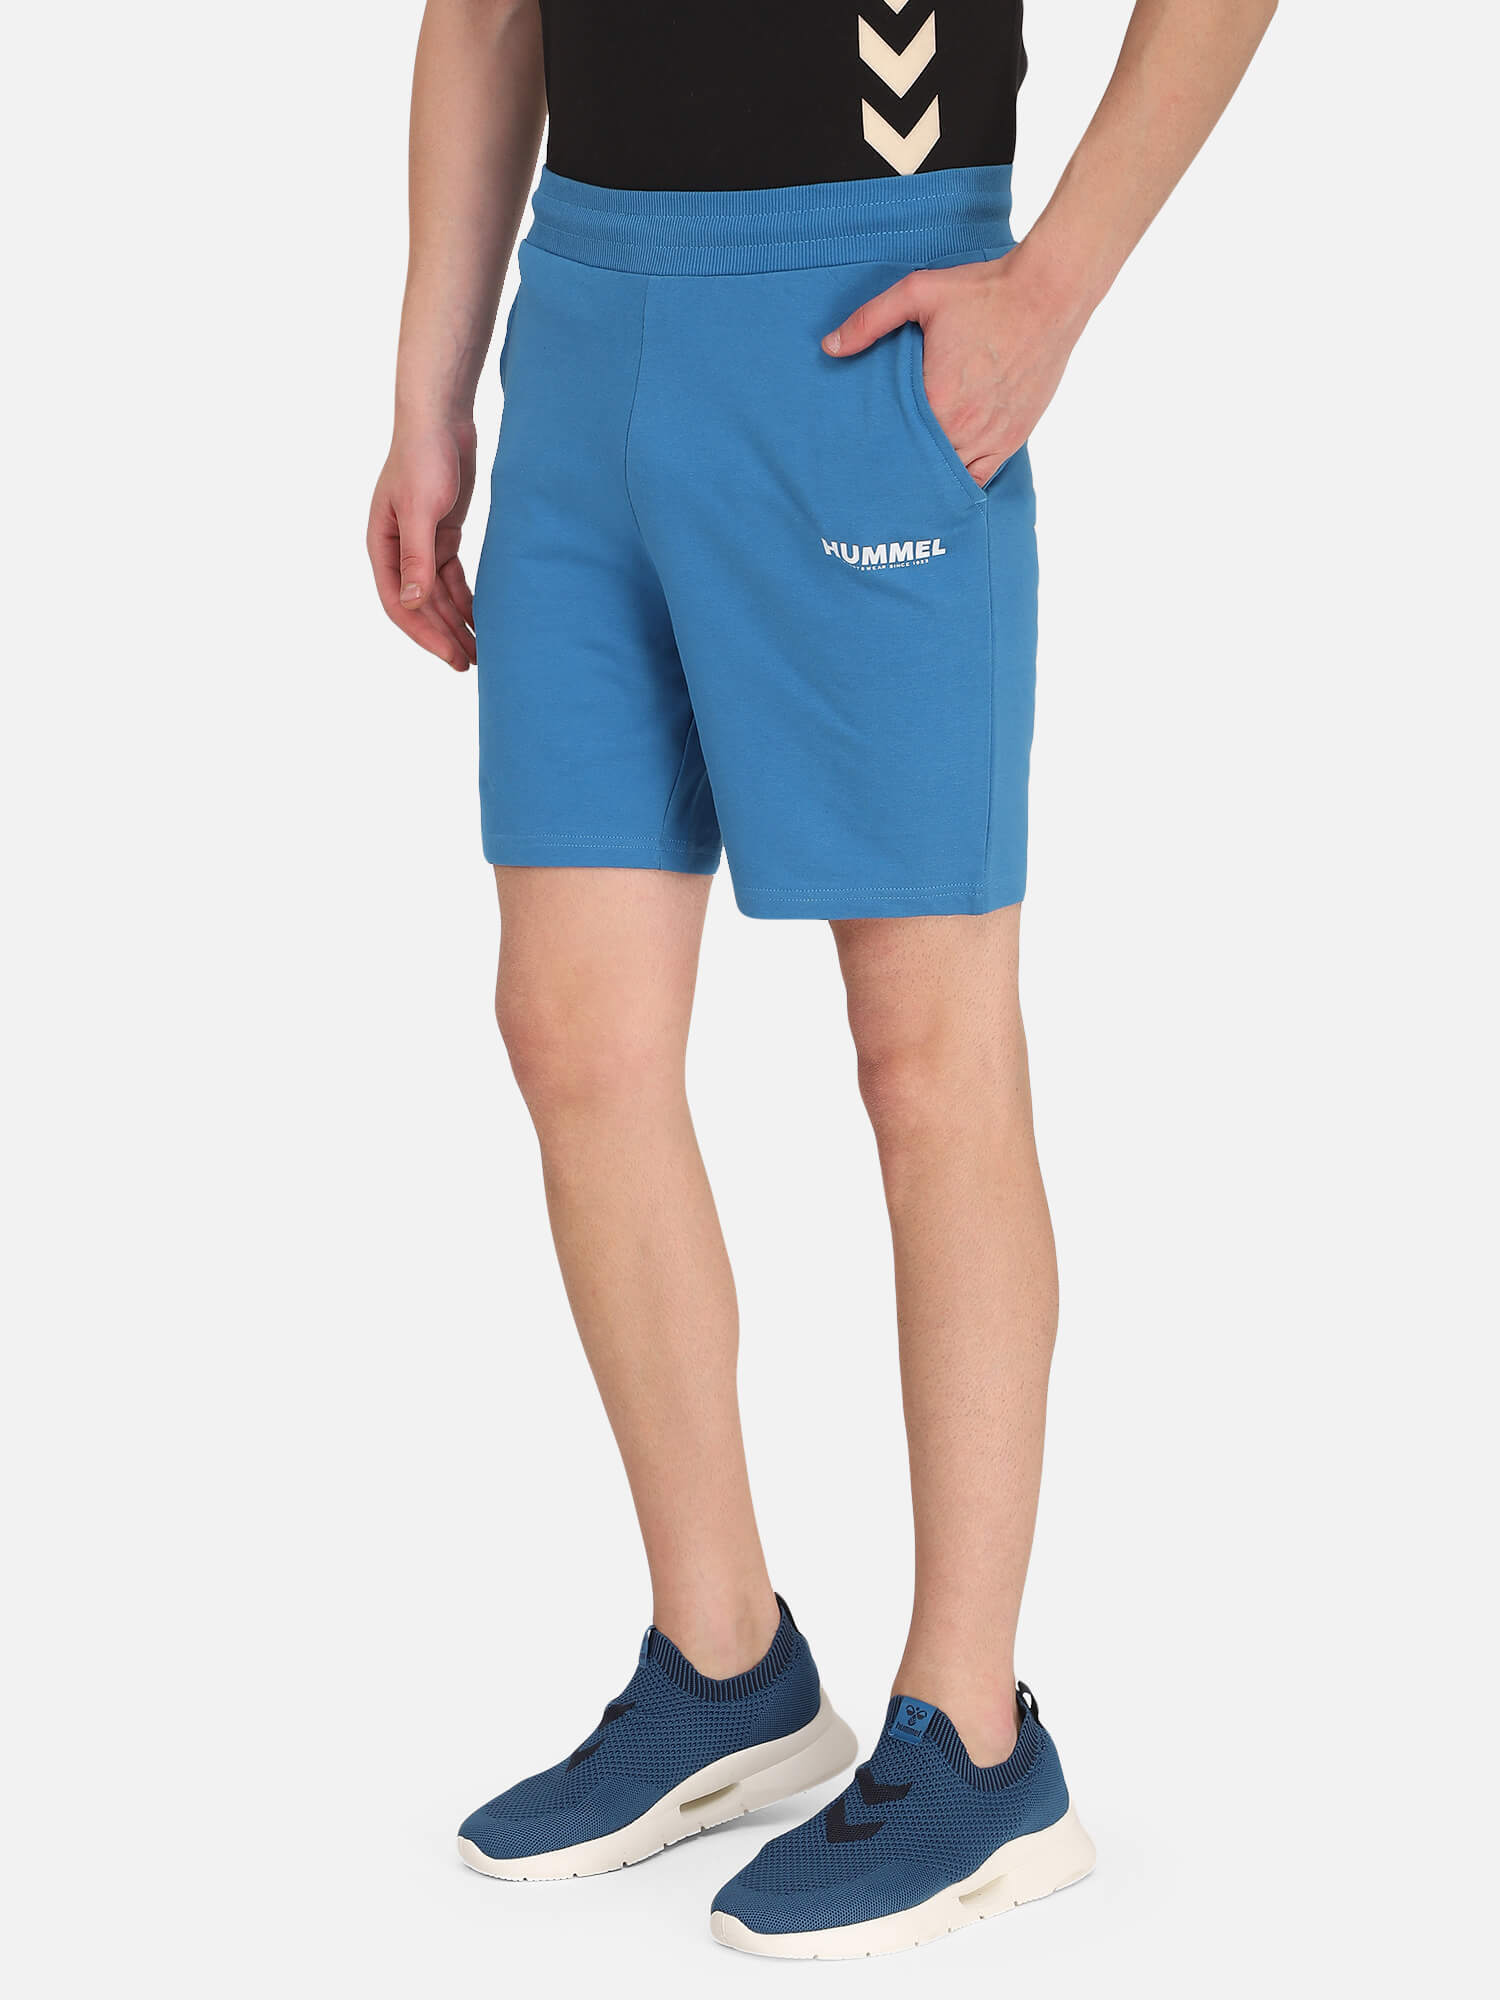 Legacy Blue Shorts for Men